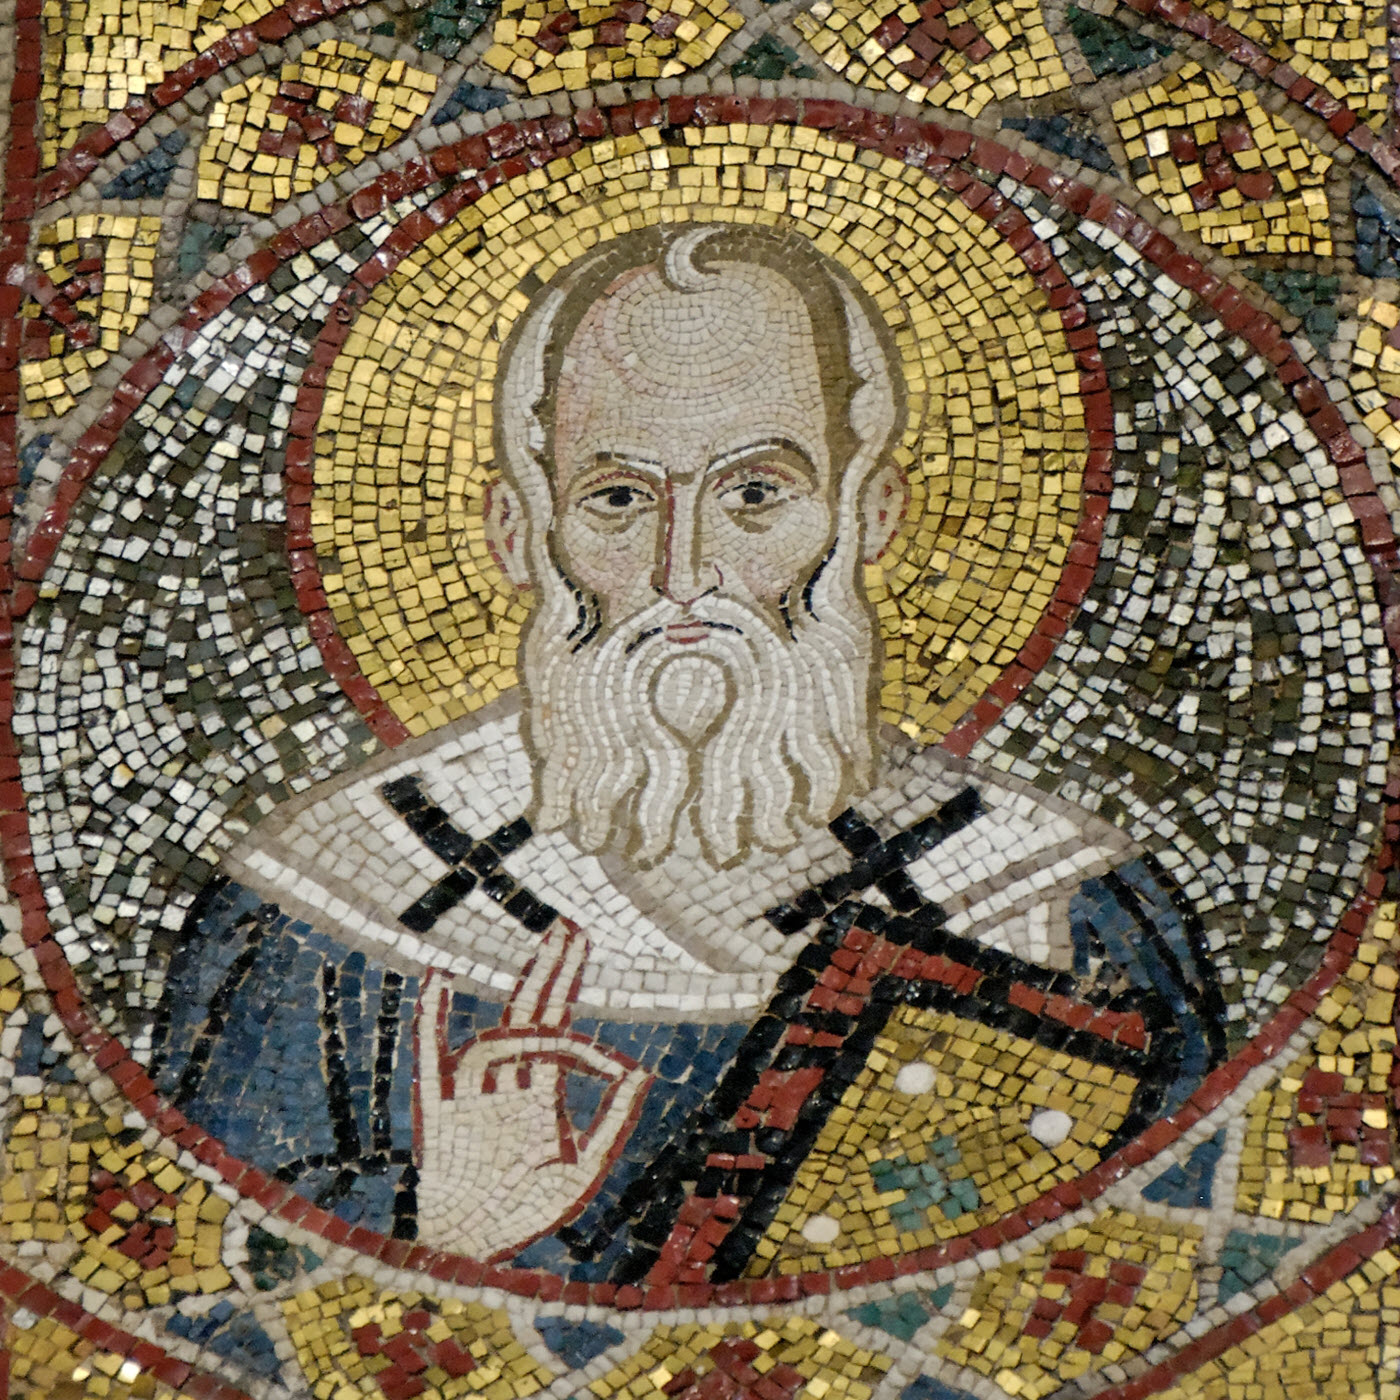 القديس غريغوريوس اللاهوتي (النزينزي) - حياته وأعماله وعصره